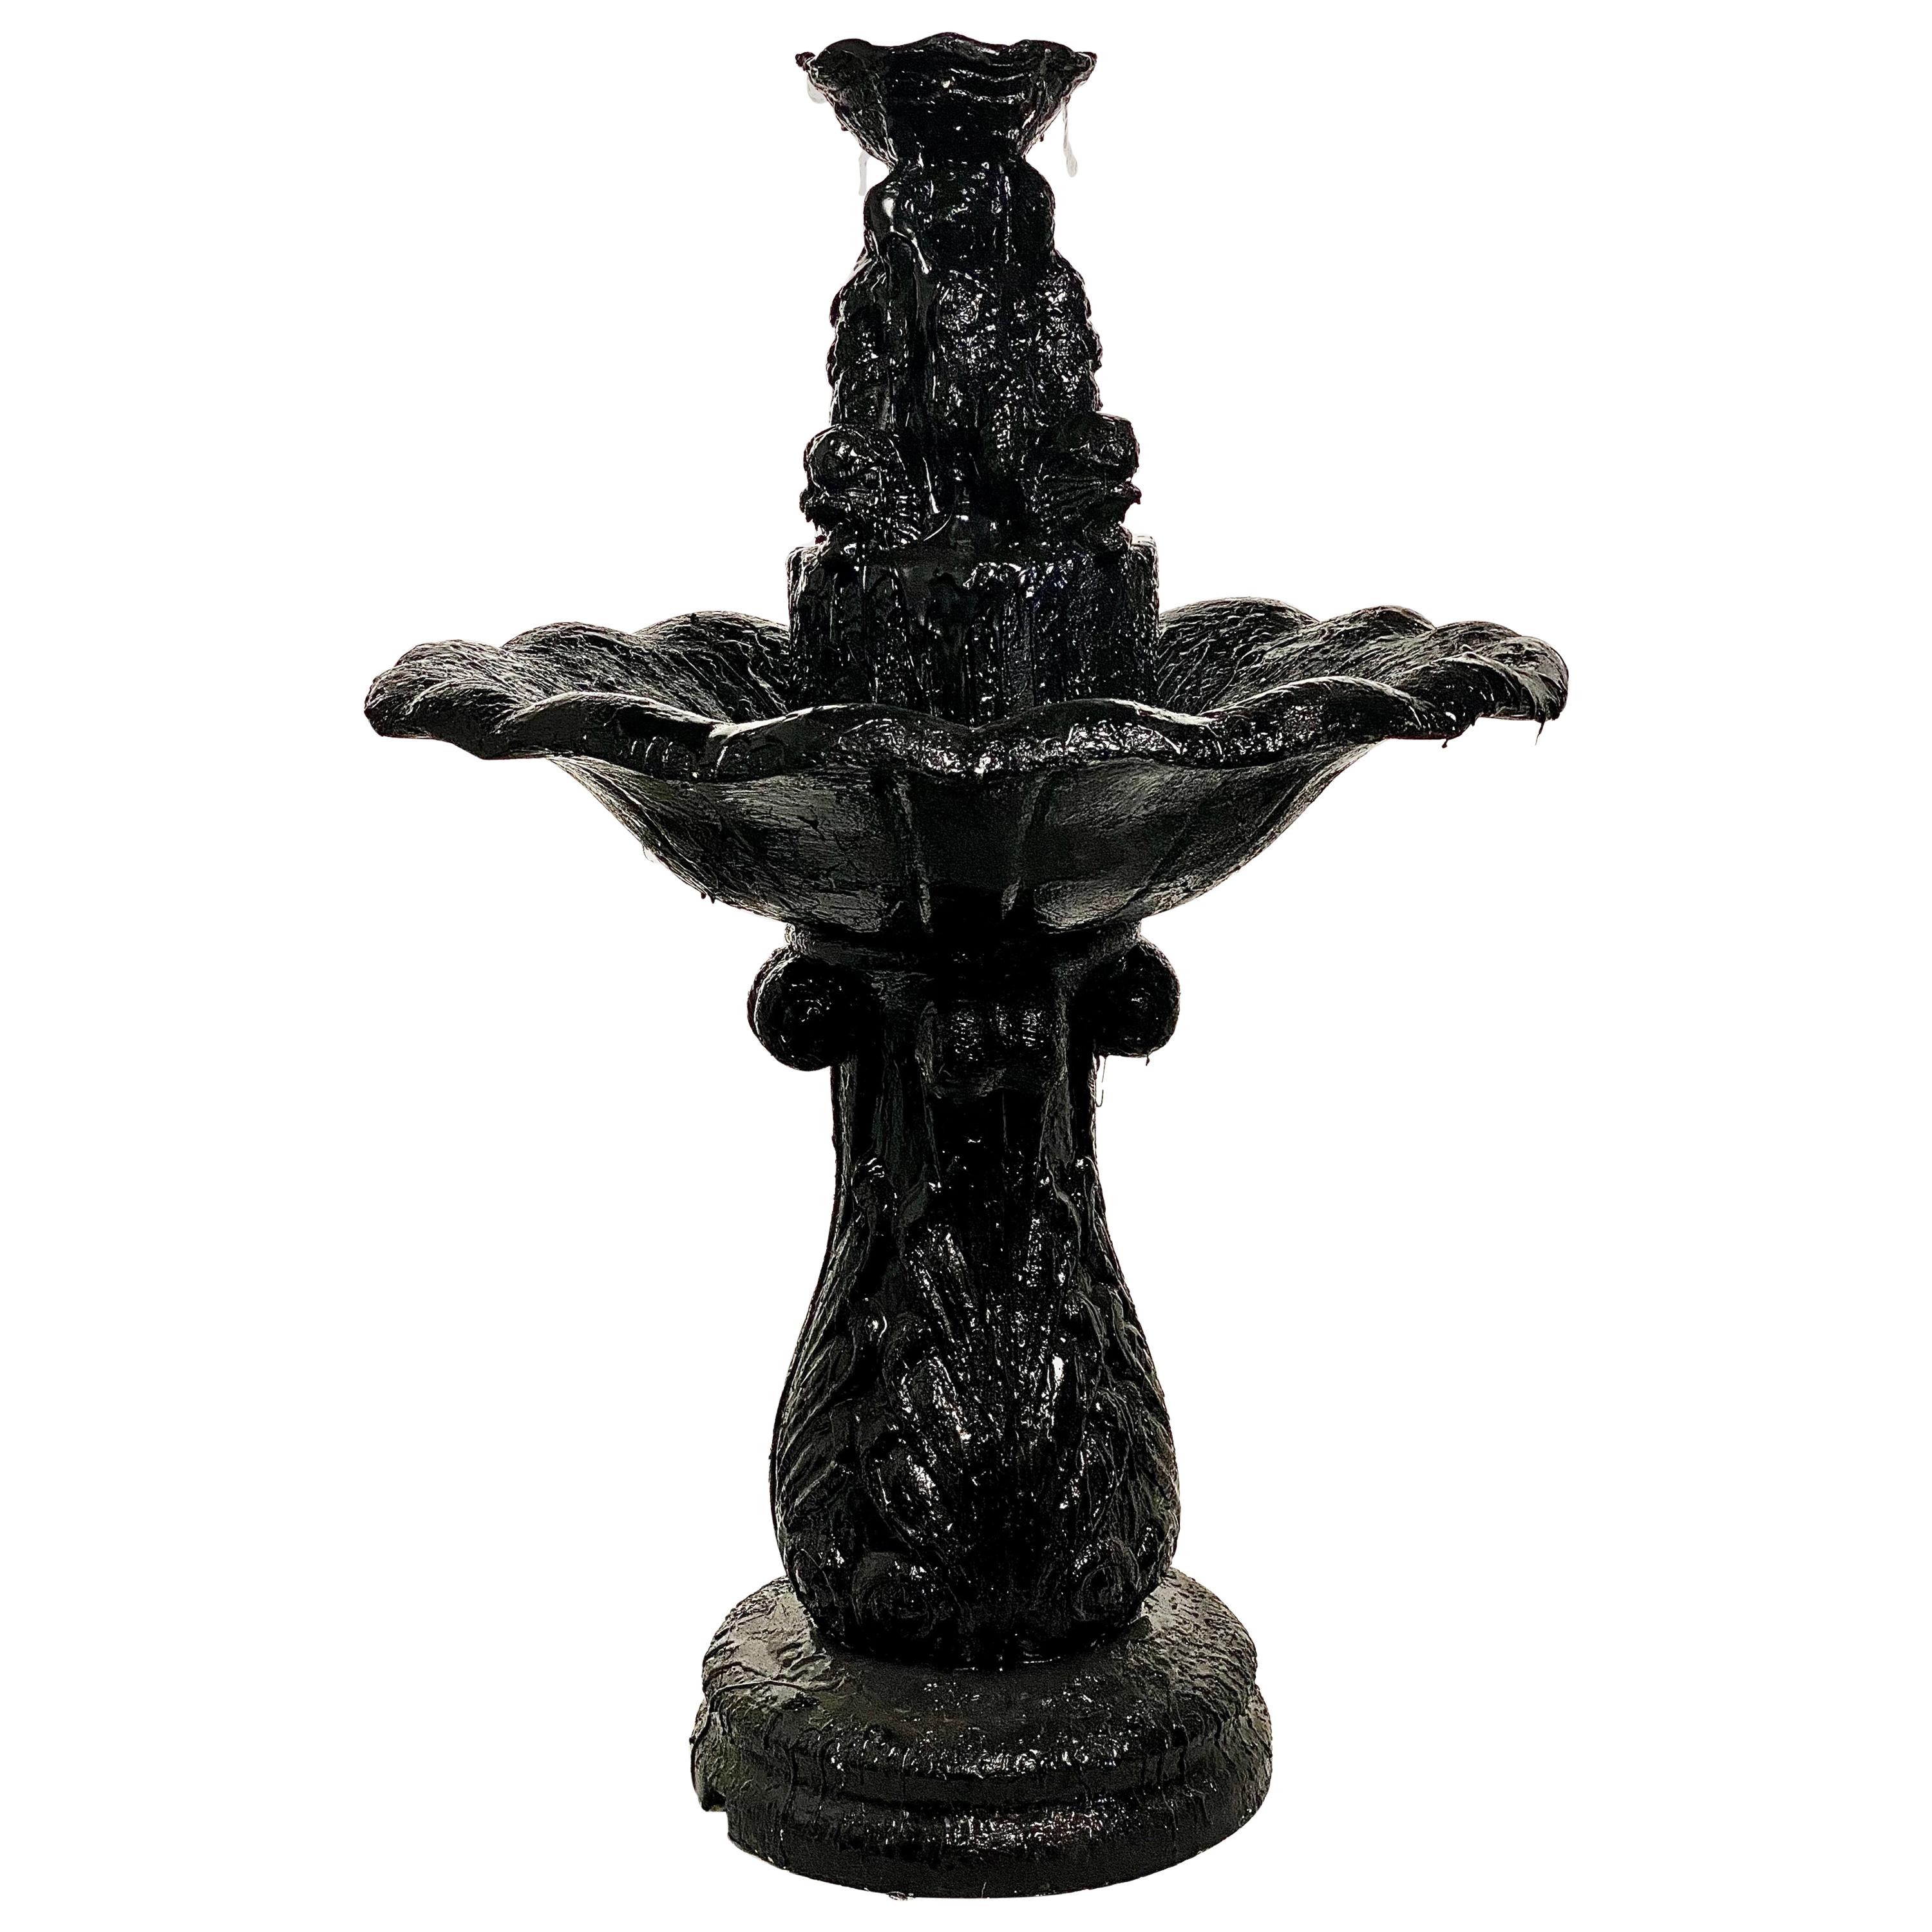 Black Fountain Tar Sculptural, 21st Century by Mattia Biagi For Sale